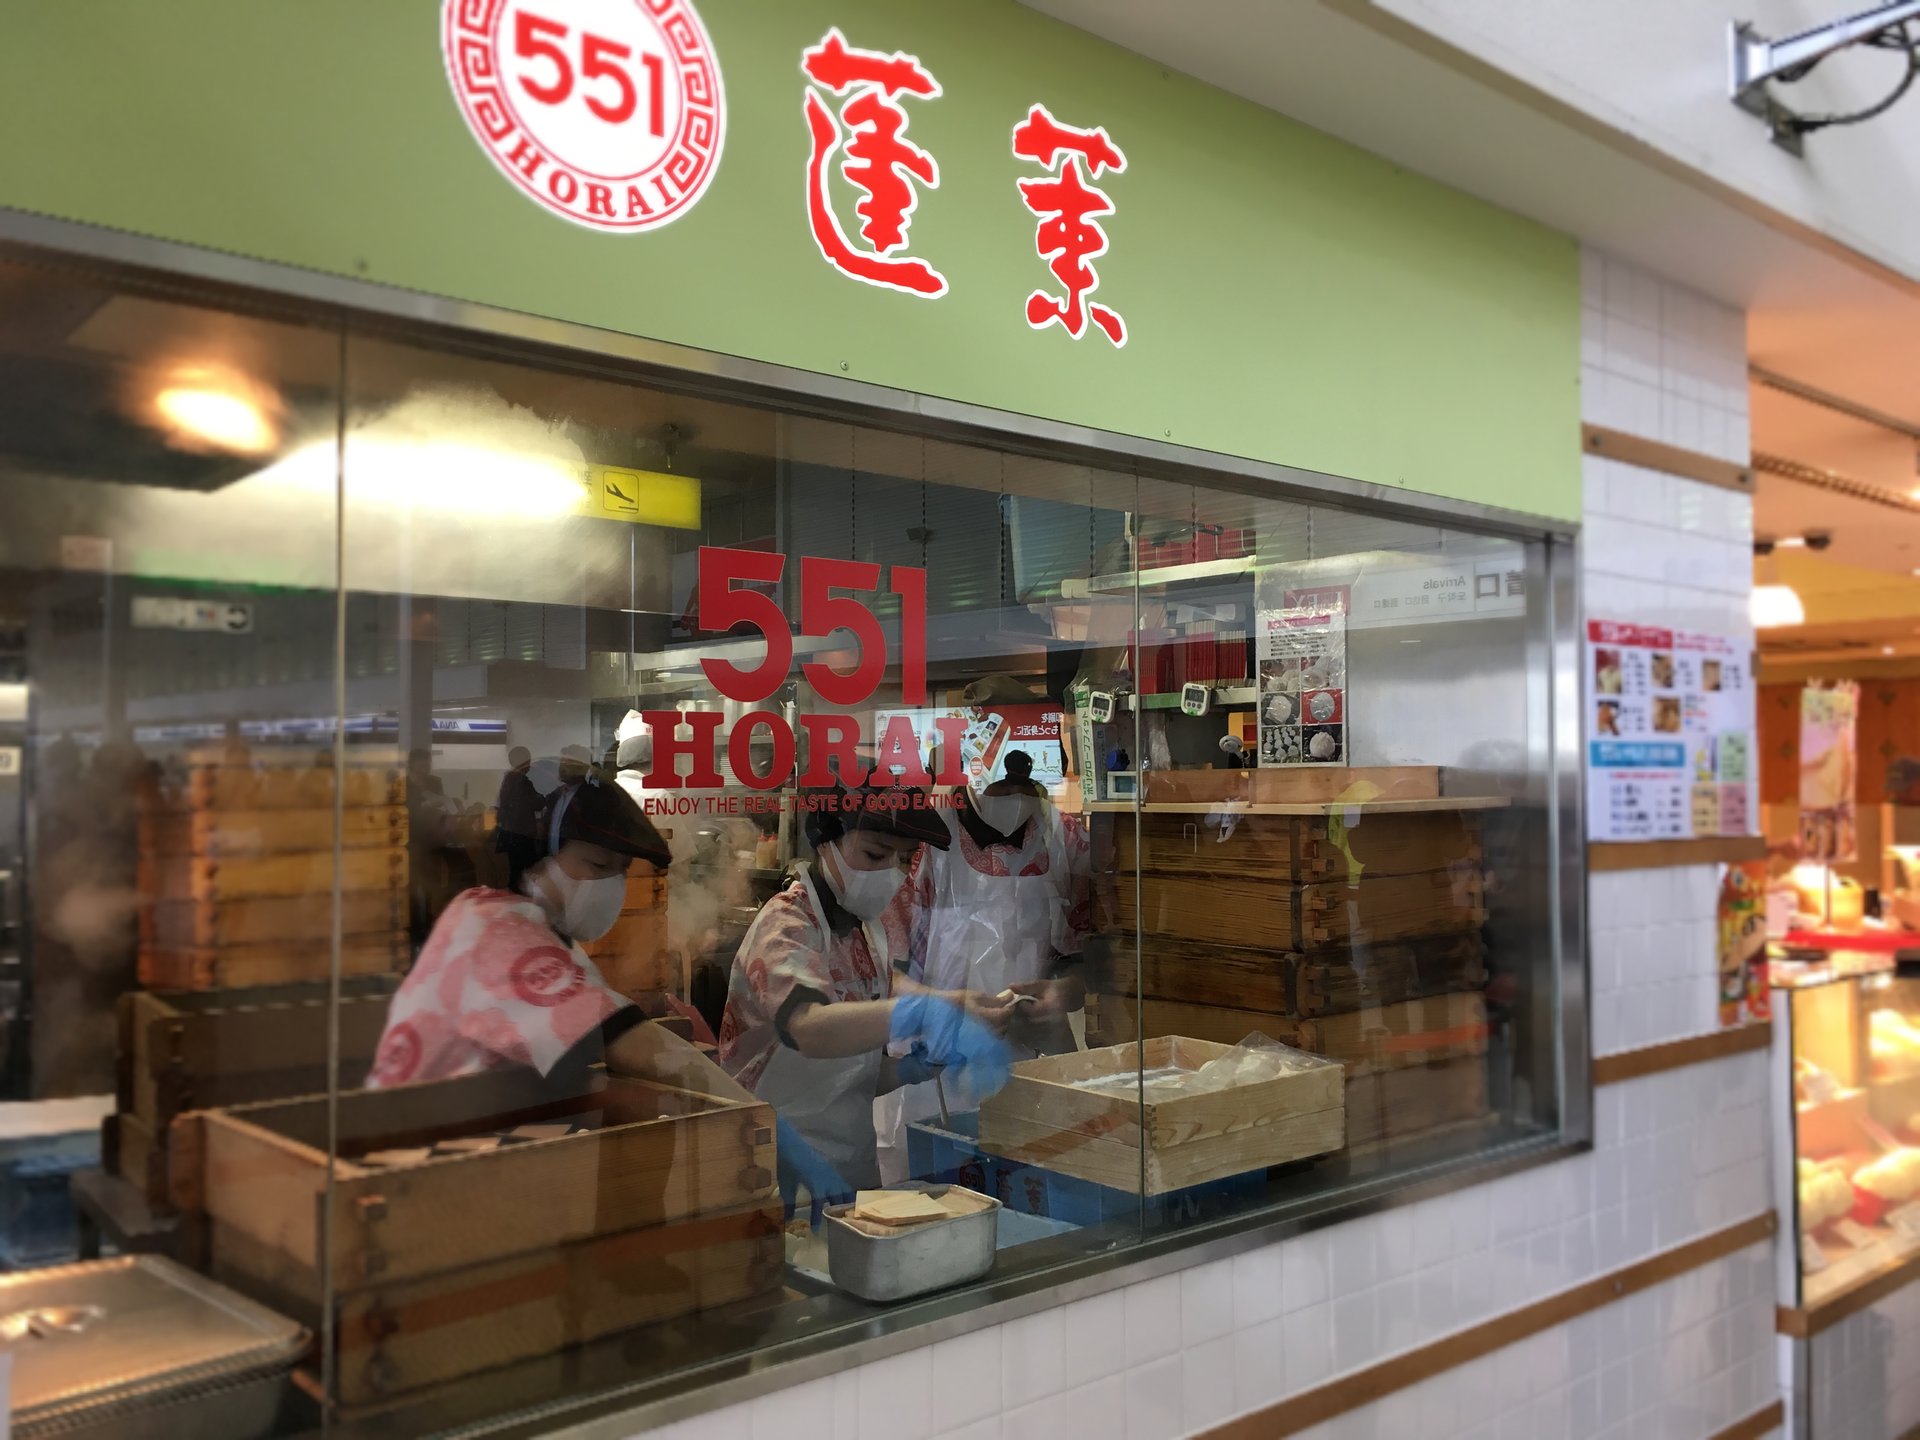 551蓬莱 「飲茶CAFE」伊丹空港店(南ターミナル)